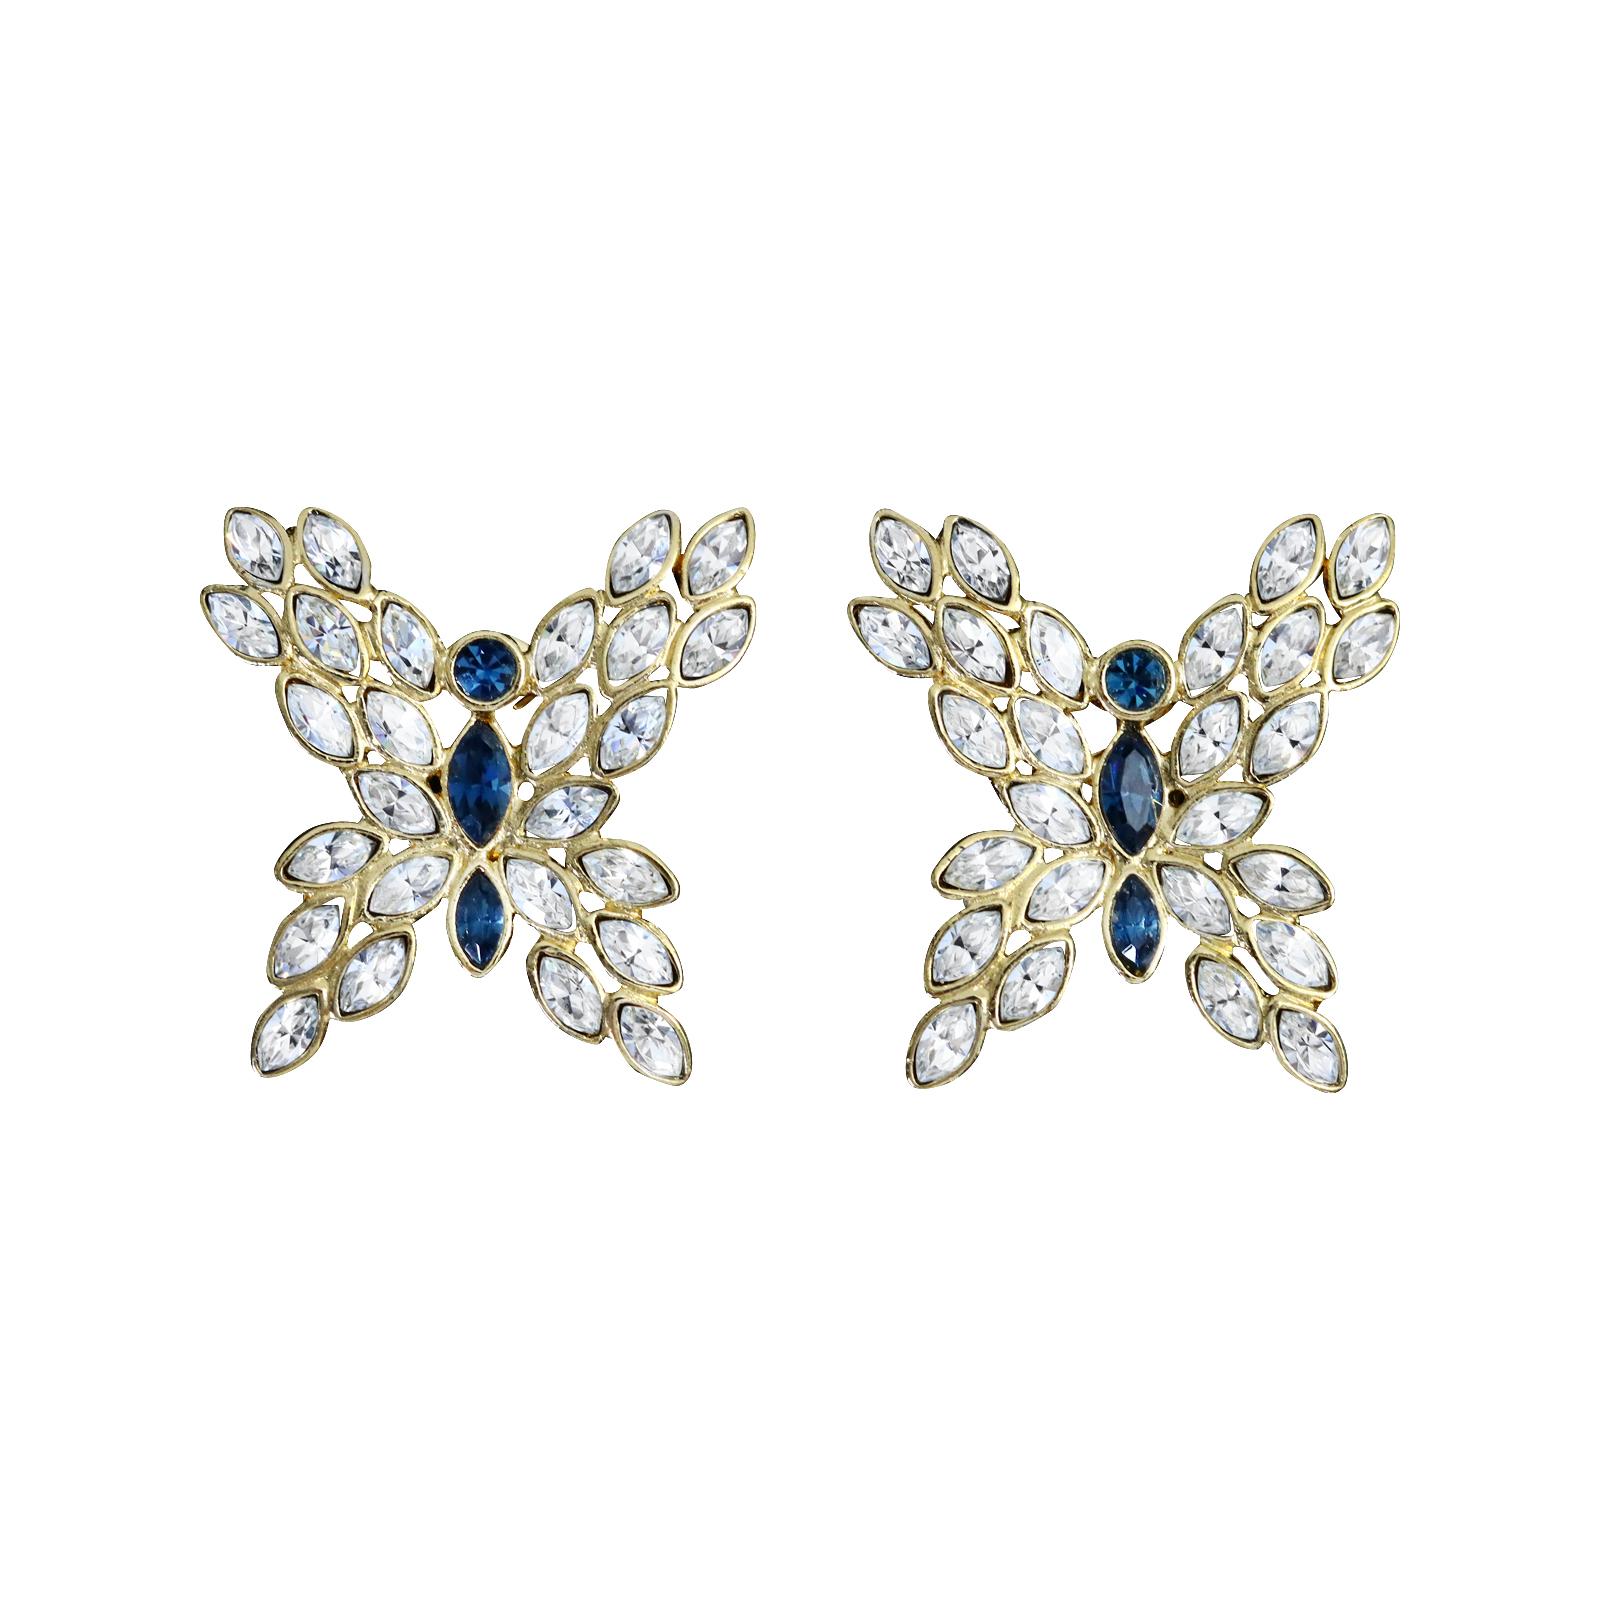 rhinestone butterfly earrings